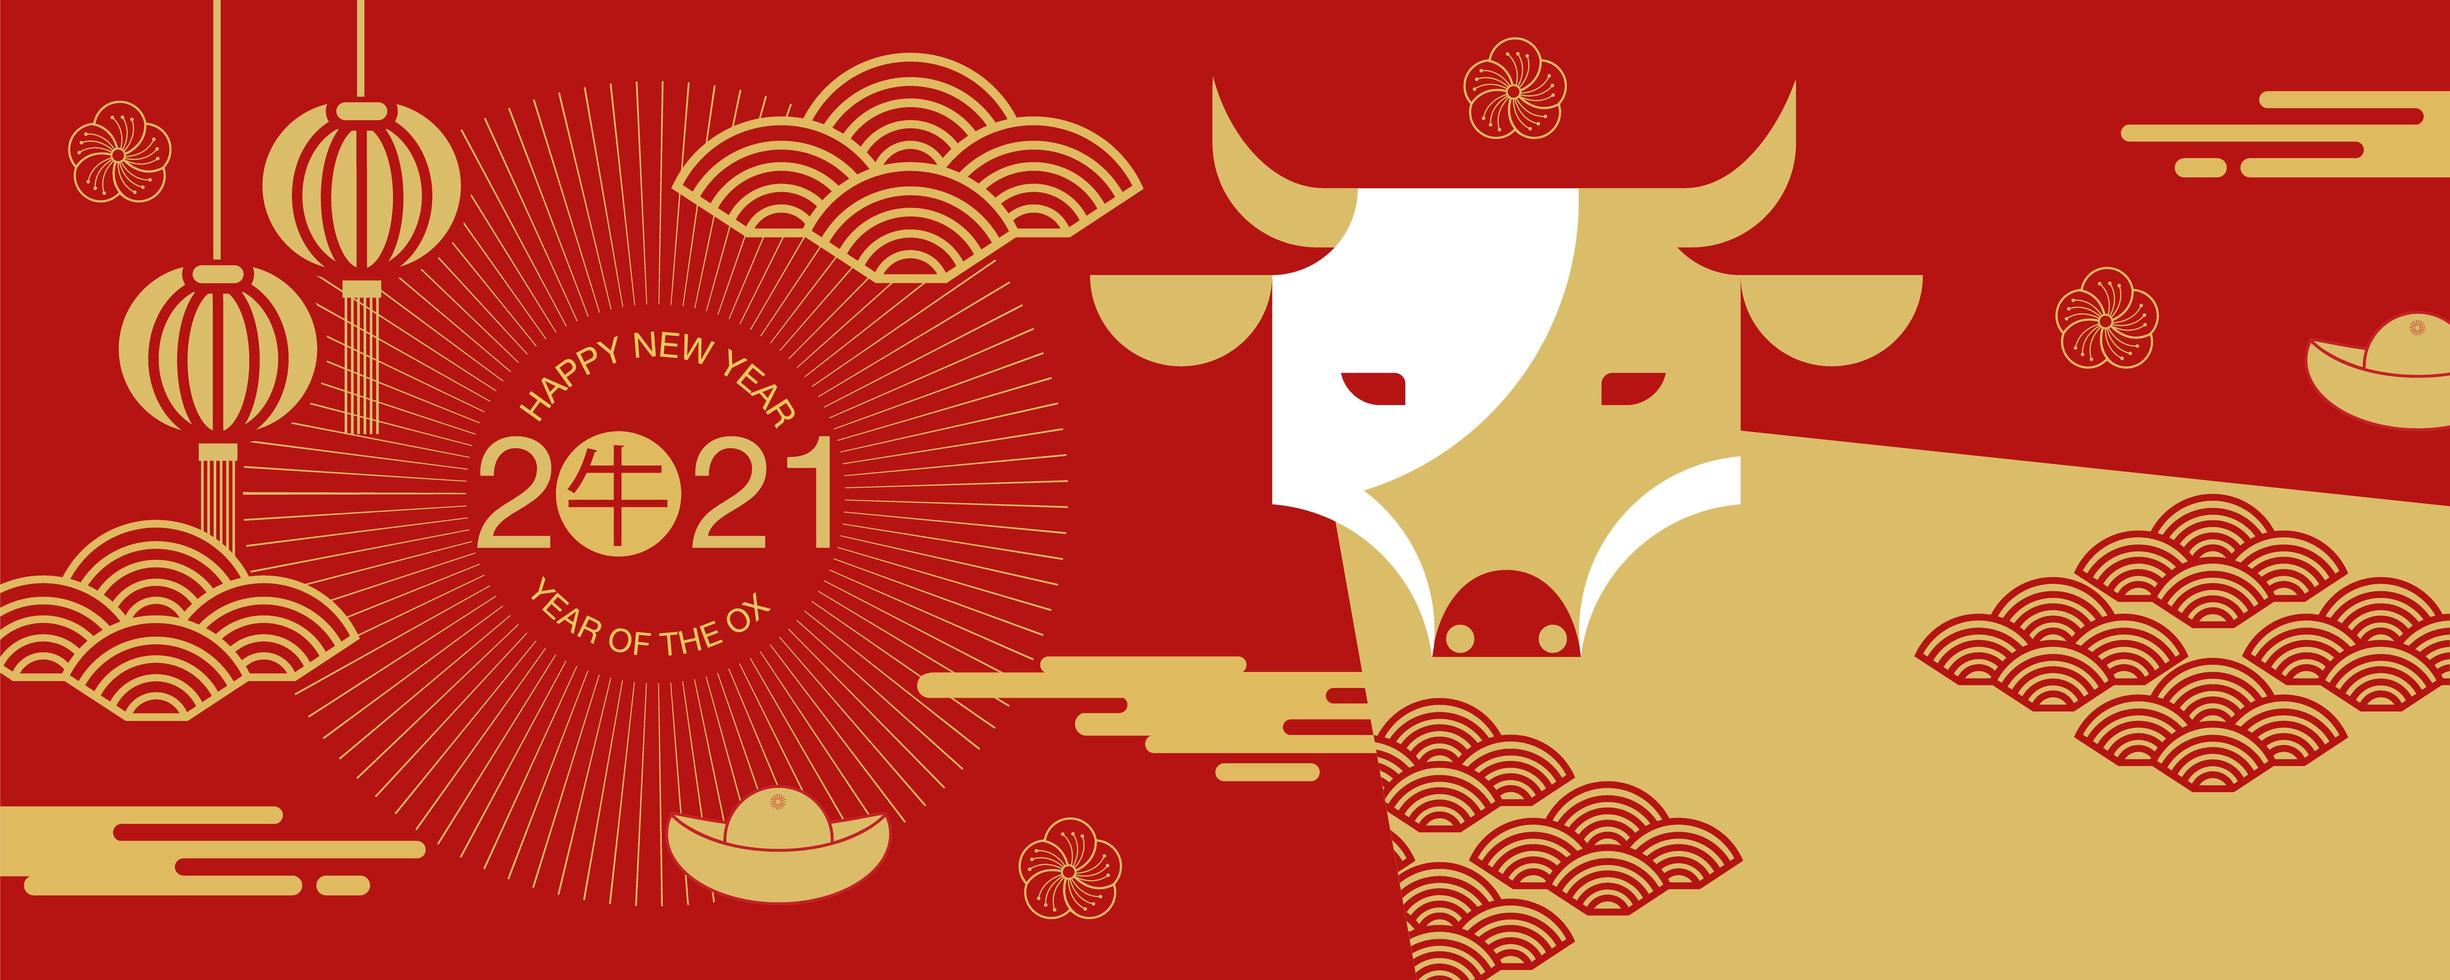 ano novo chinês 2021 banner com vista frontal do boi vetor